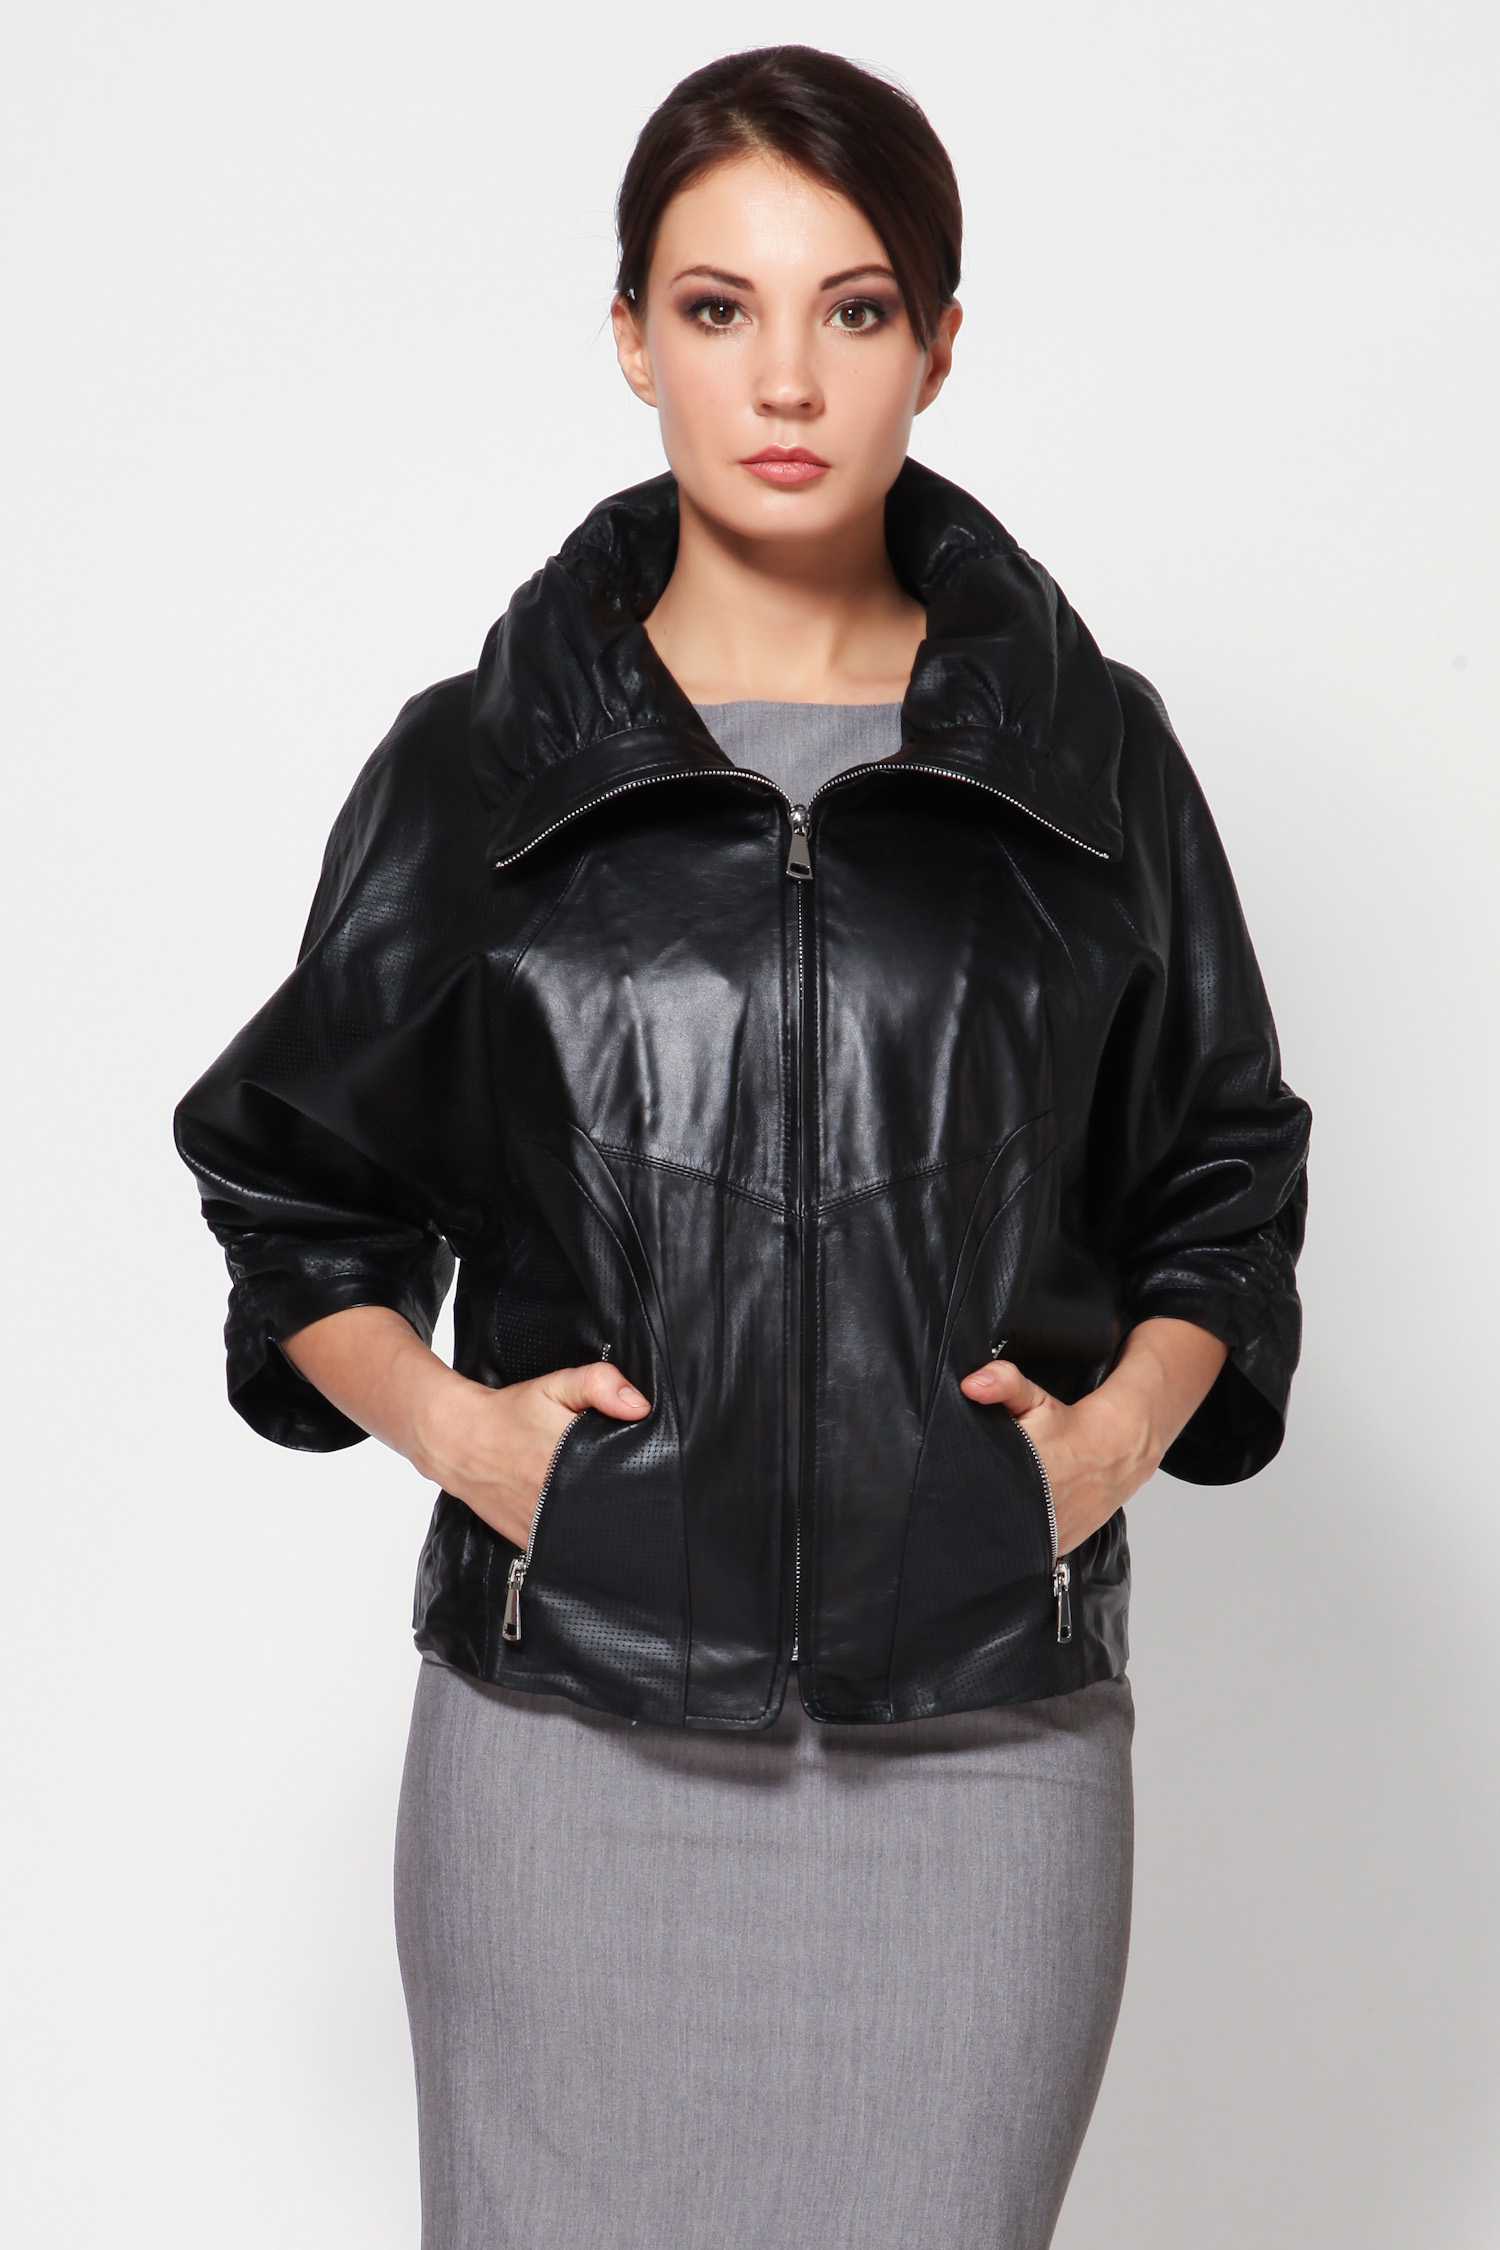 Кожа женская куртка большие размеры. Куртка "летучая мышь" Max Mara. Алеф кожаные куртки. Куртки летучая мышь с рукавом 2023. Кожаные куртки для полных женщин.